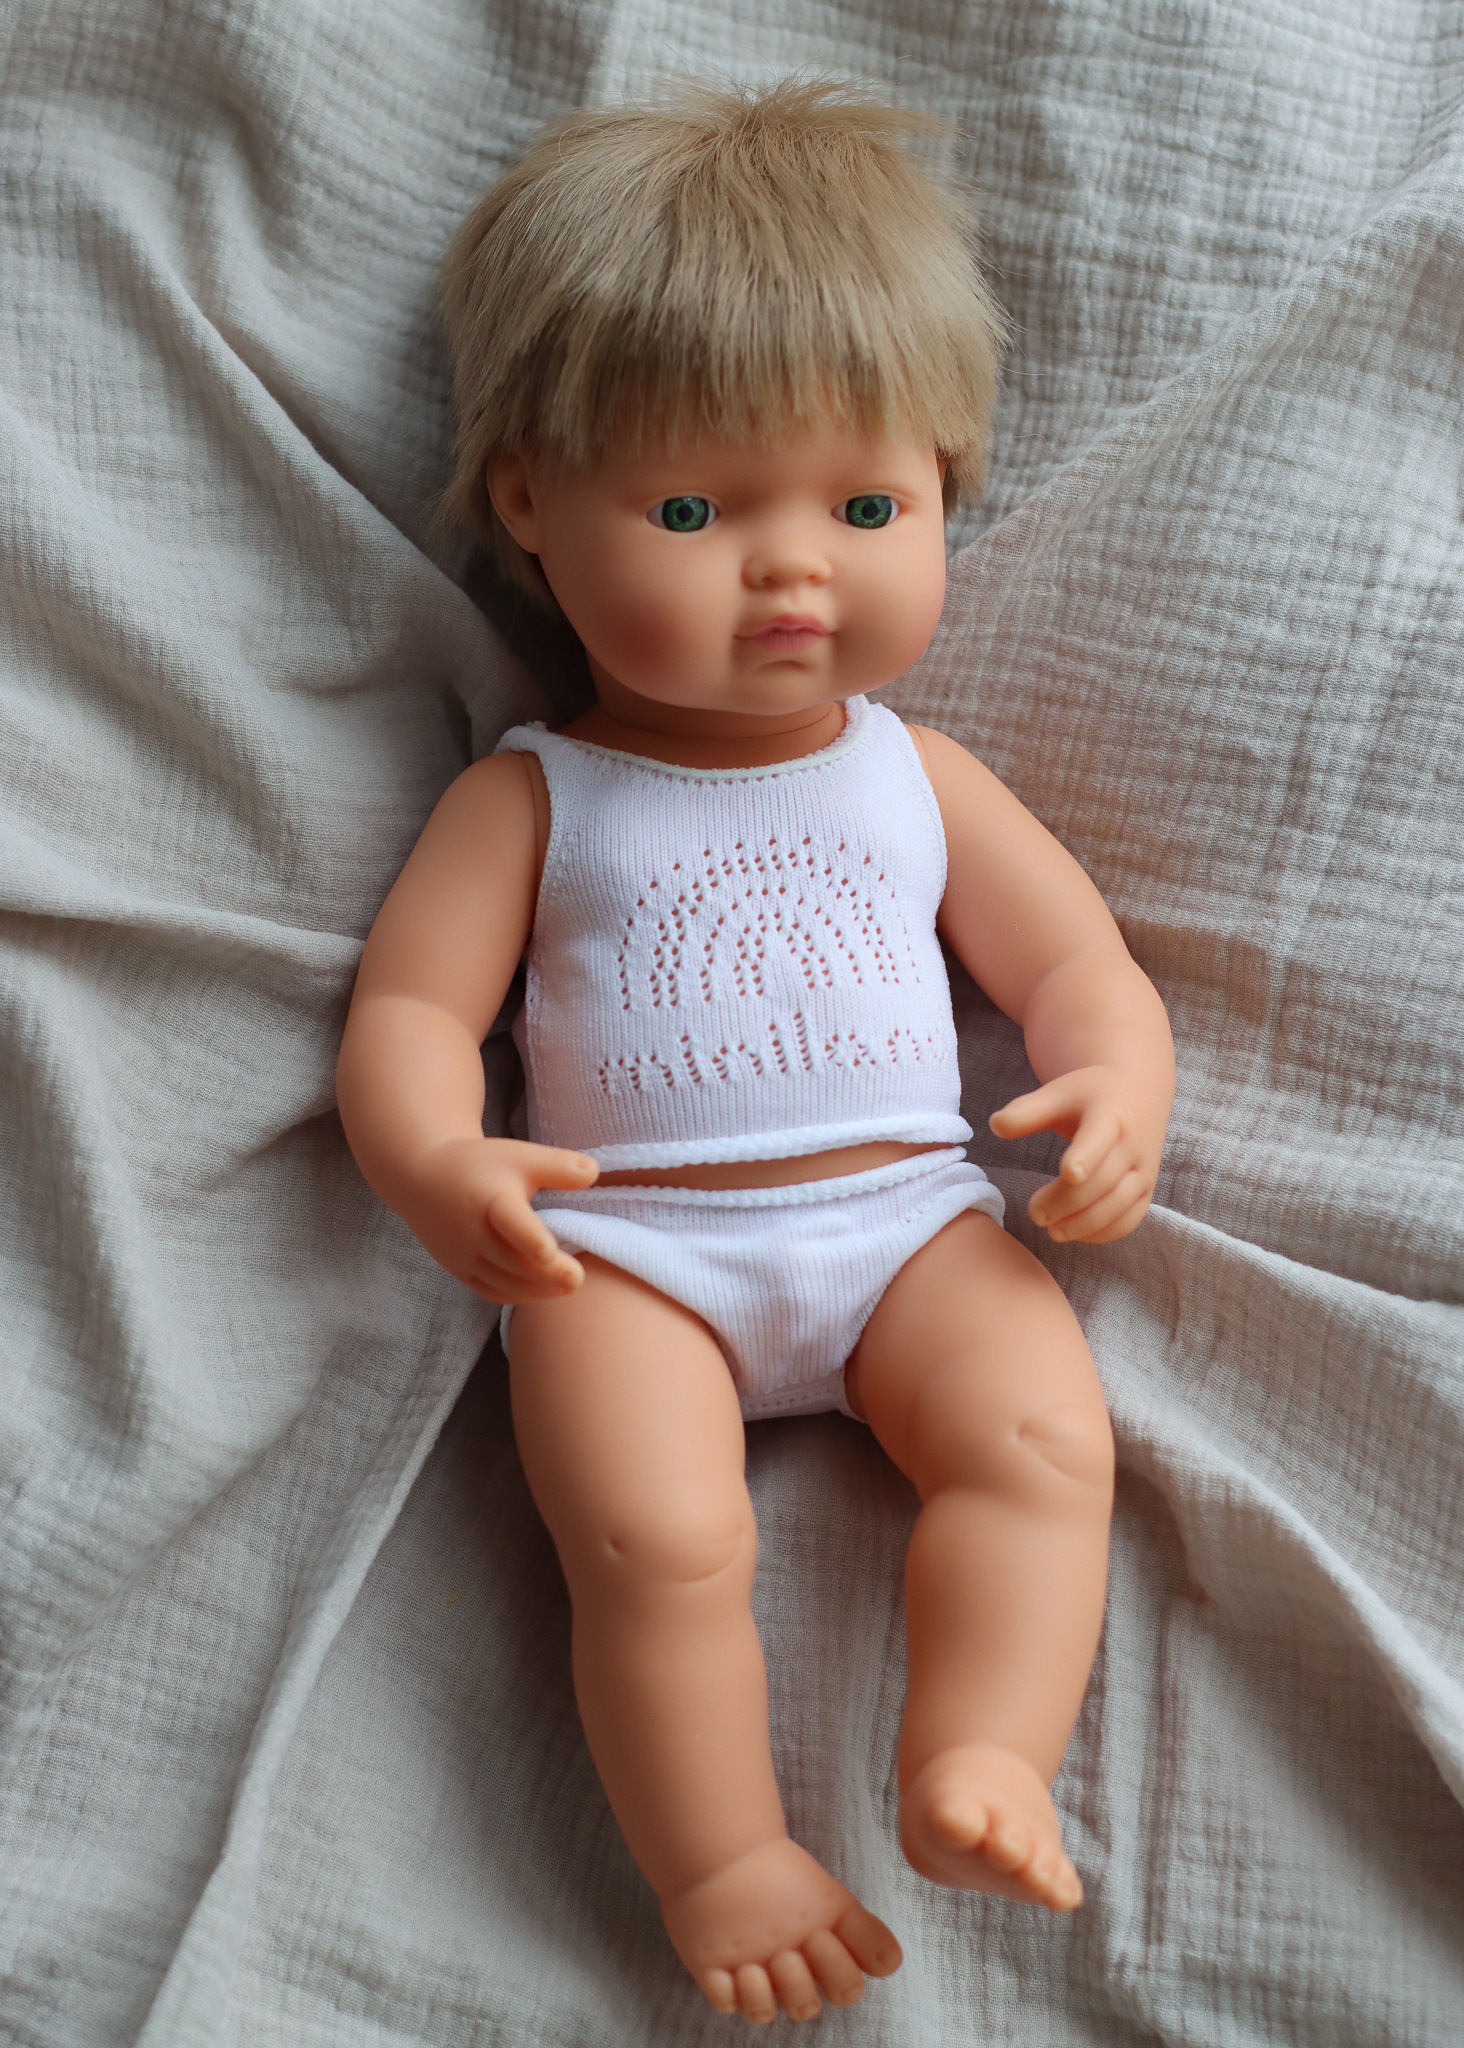 Baby doll caucasian boy with dark blonde hair